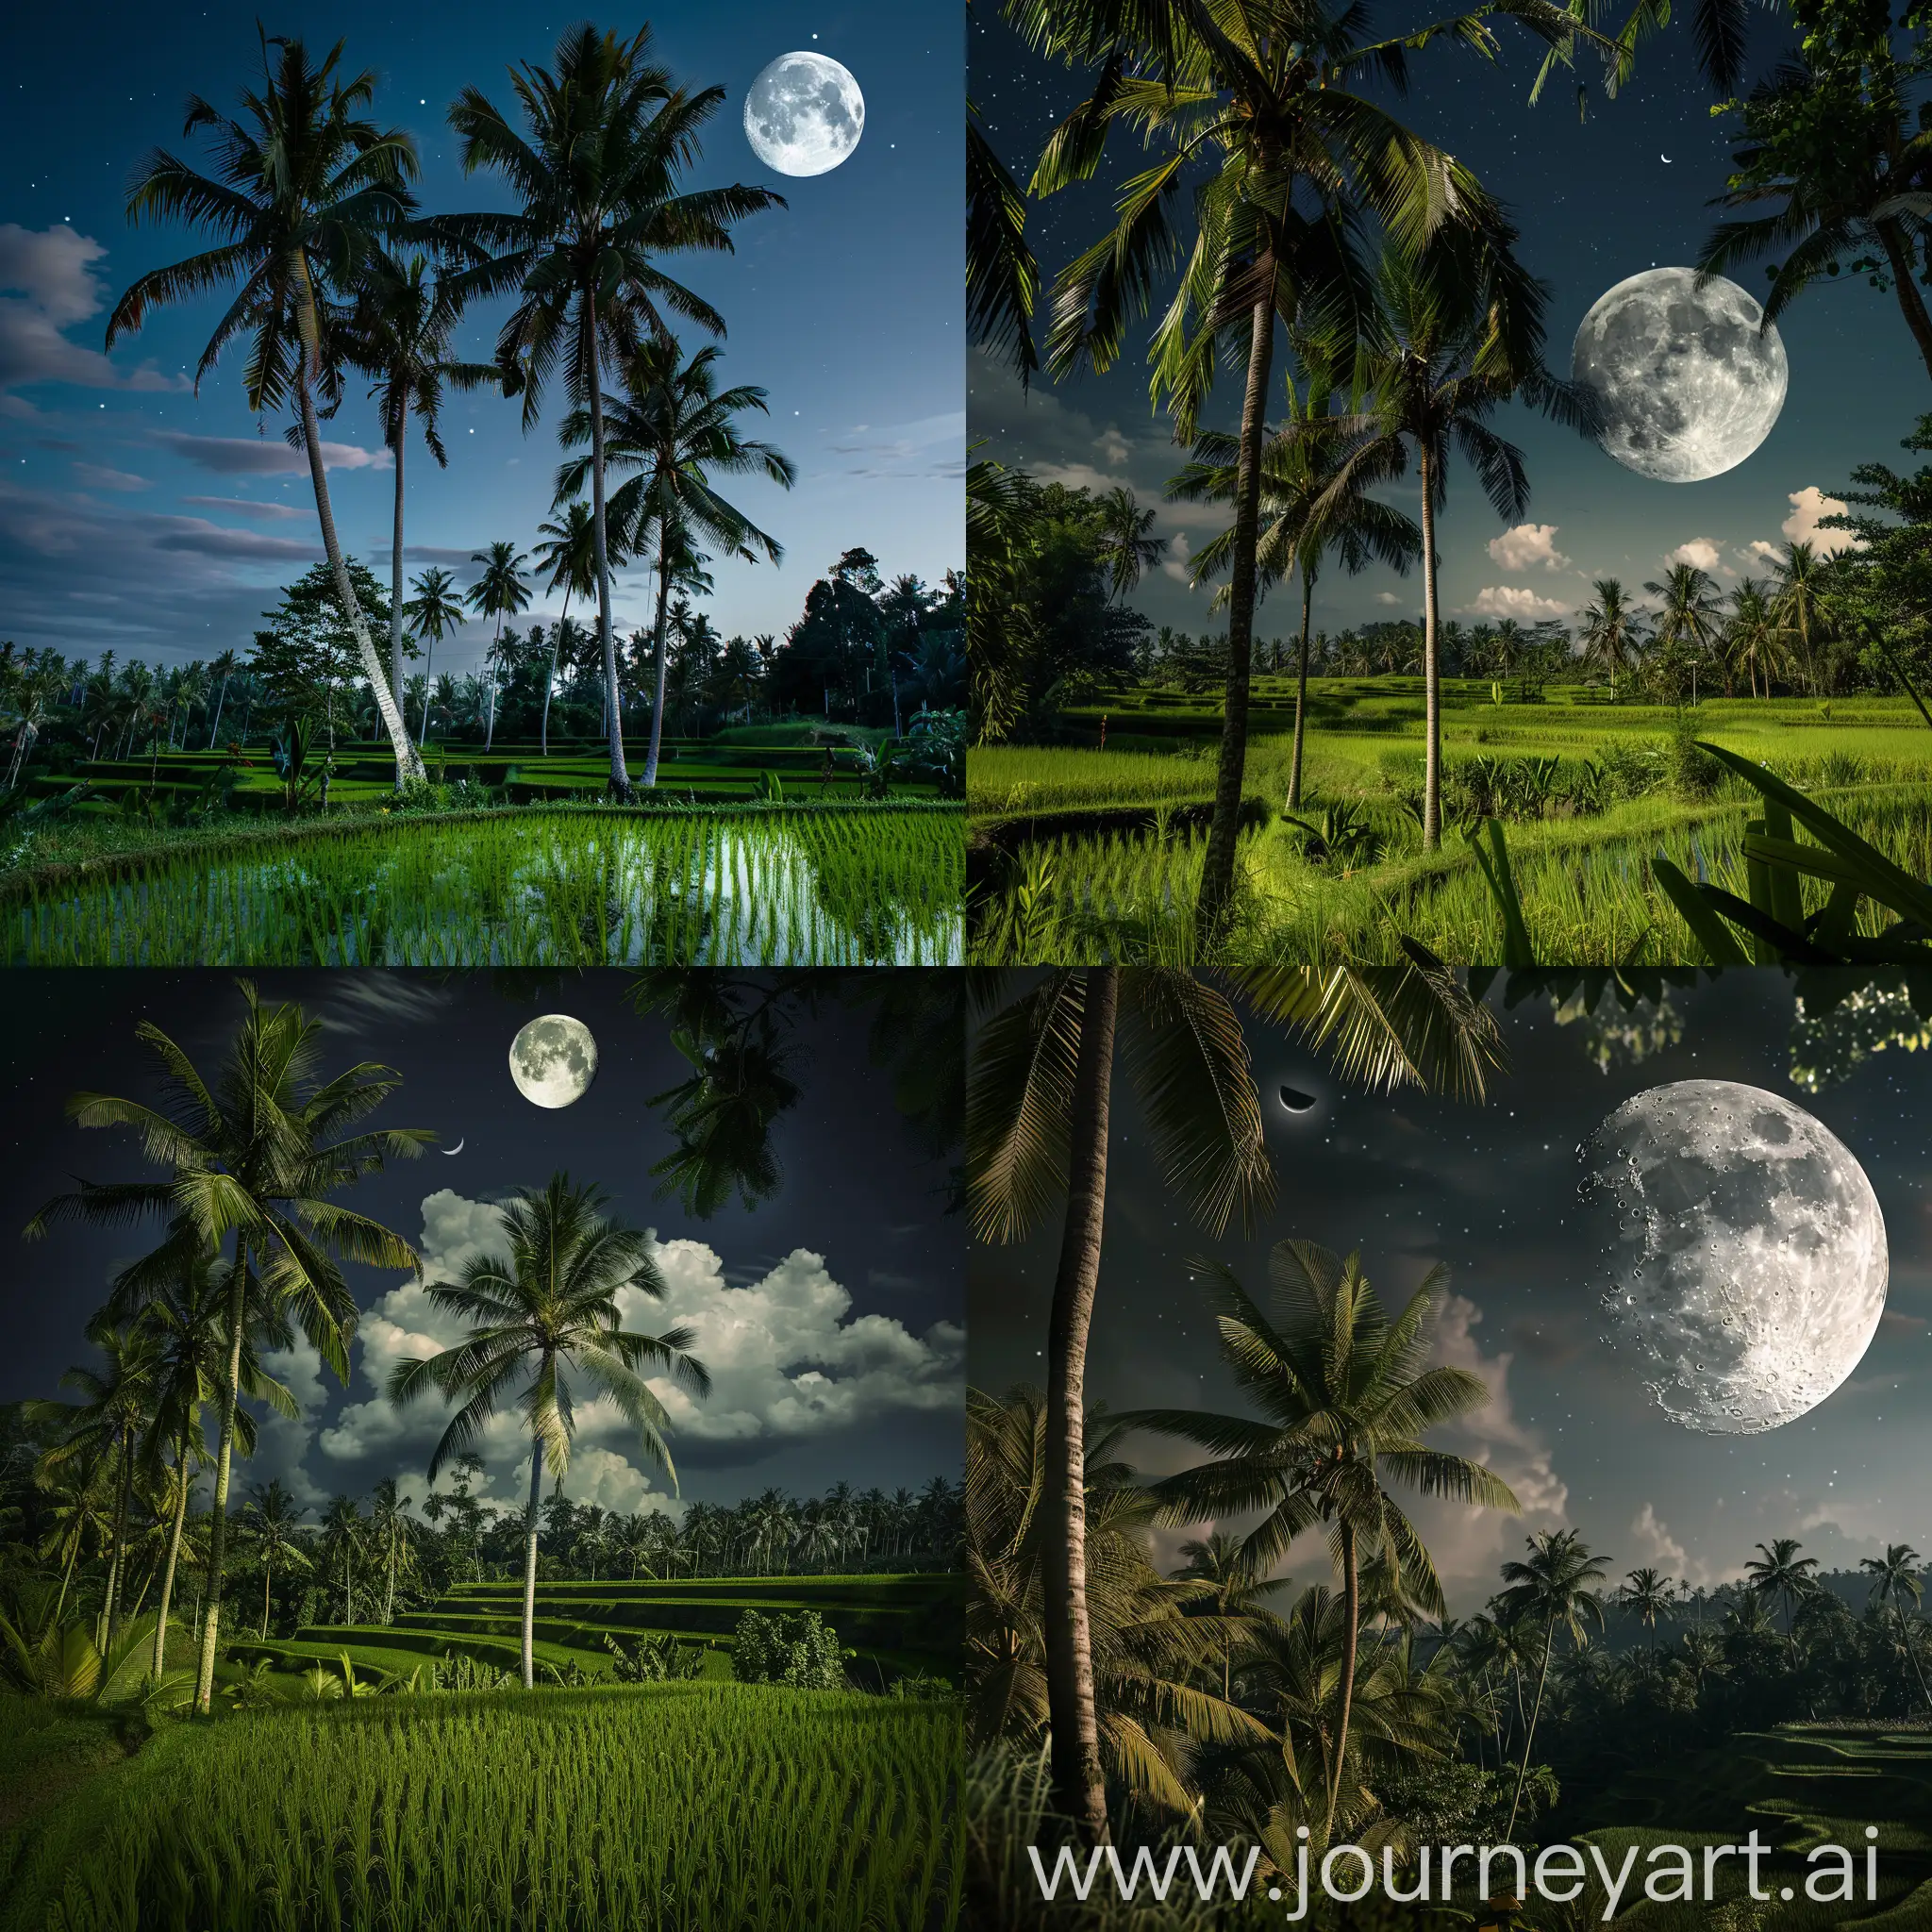 Suasana Malam Di Sawah padi. Ada pokok kelapa. Bulan mengambang. Realistic photography 